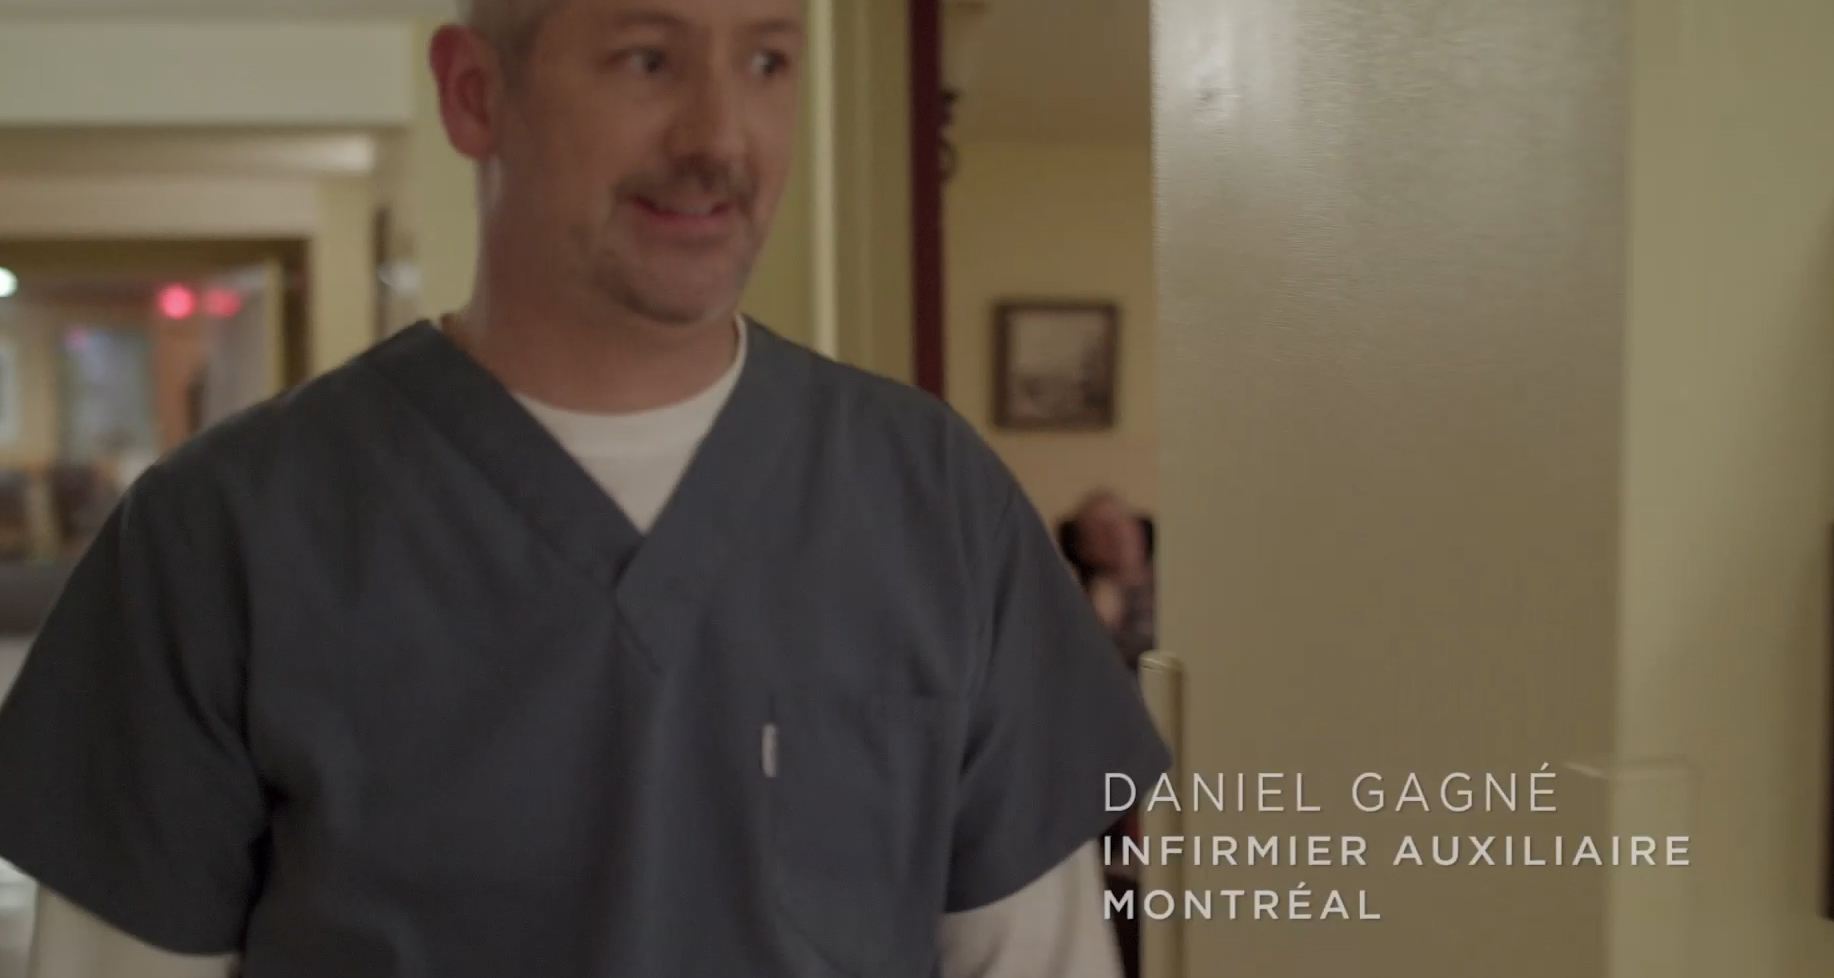 Daniel Gagné, infirmier auxiliaire, Centre d’hébergement Paul-Gouin